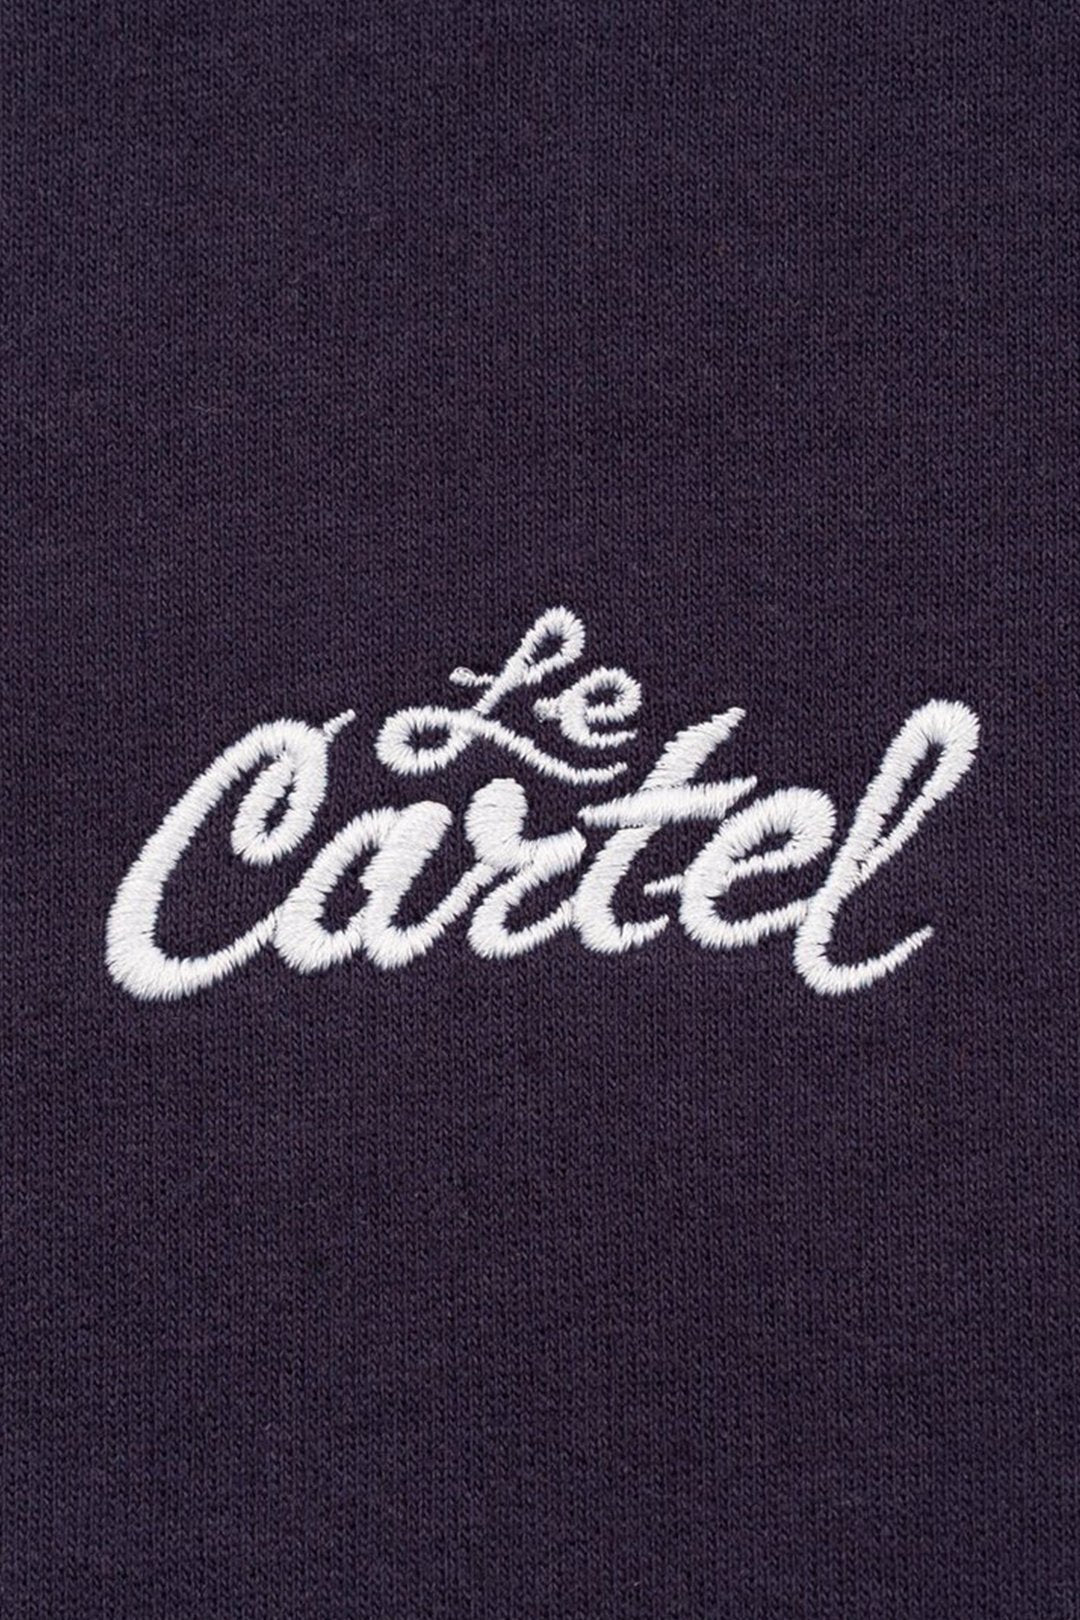 OG・Hoodie LE CARTEL・Bleu marin - Le Cartel